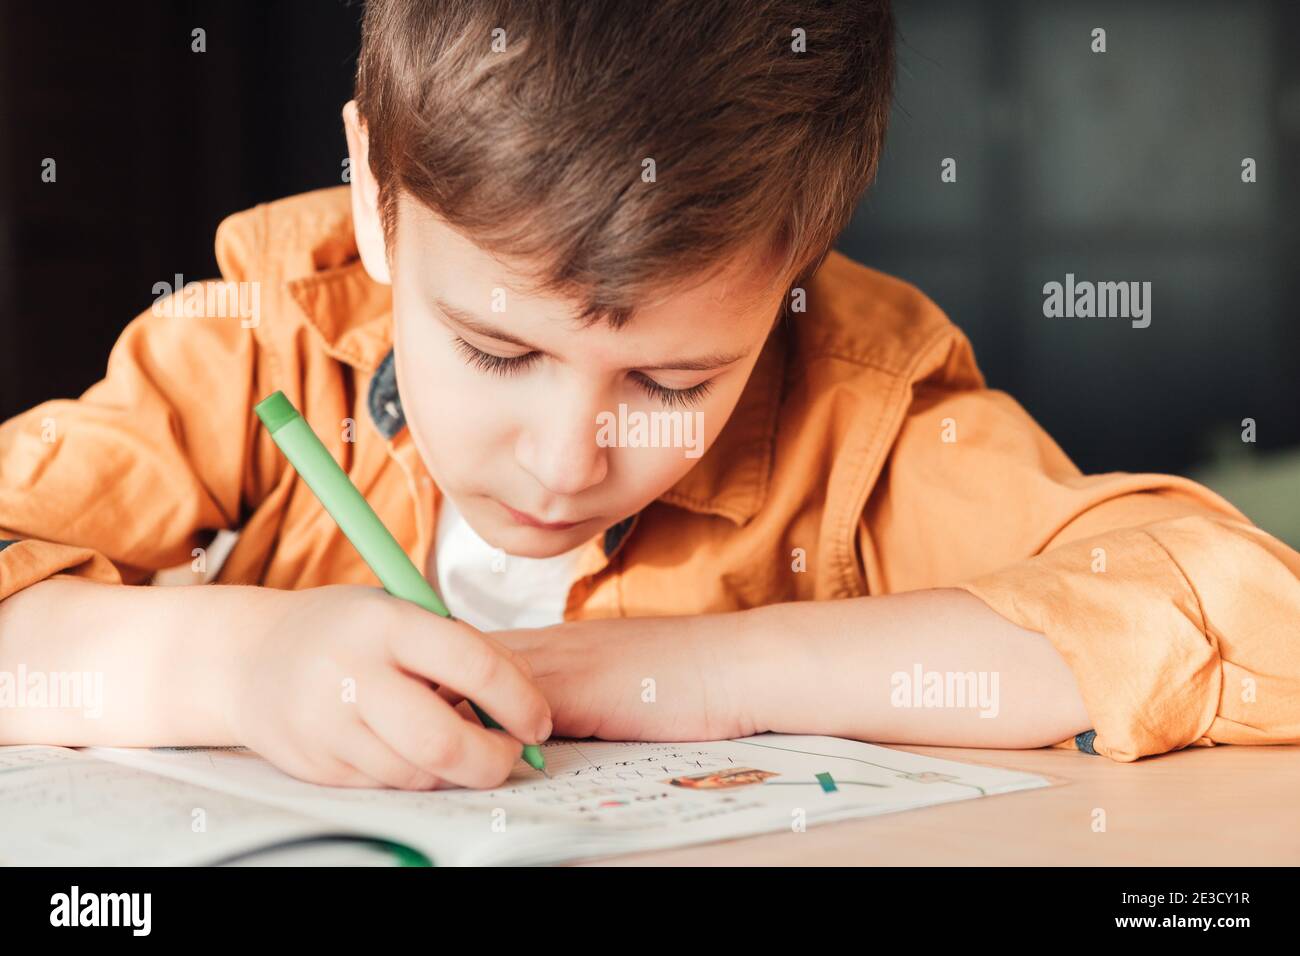 Nettes 7 Jahre altes Kind, das seine Hausaufgaben macht, am Schreibtisch sitzend. Junge schreiben in Notebook. Stockfoto